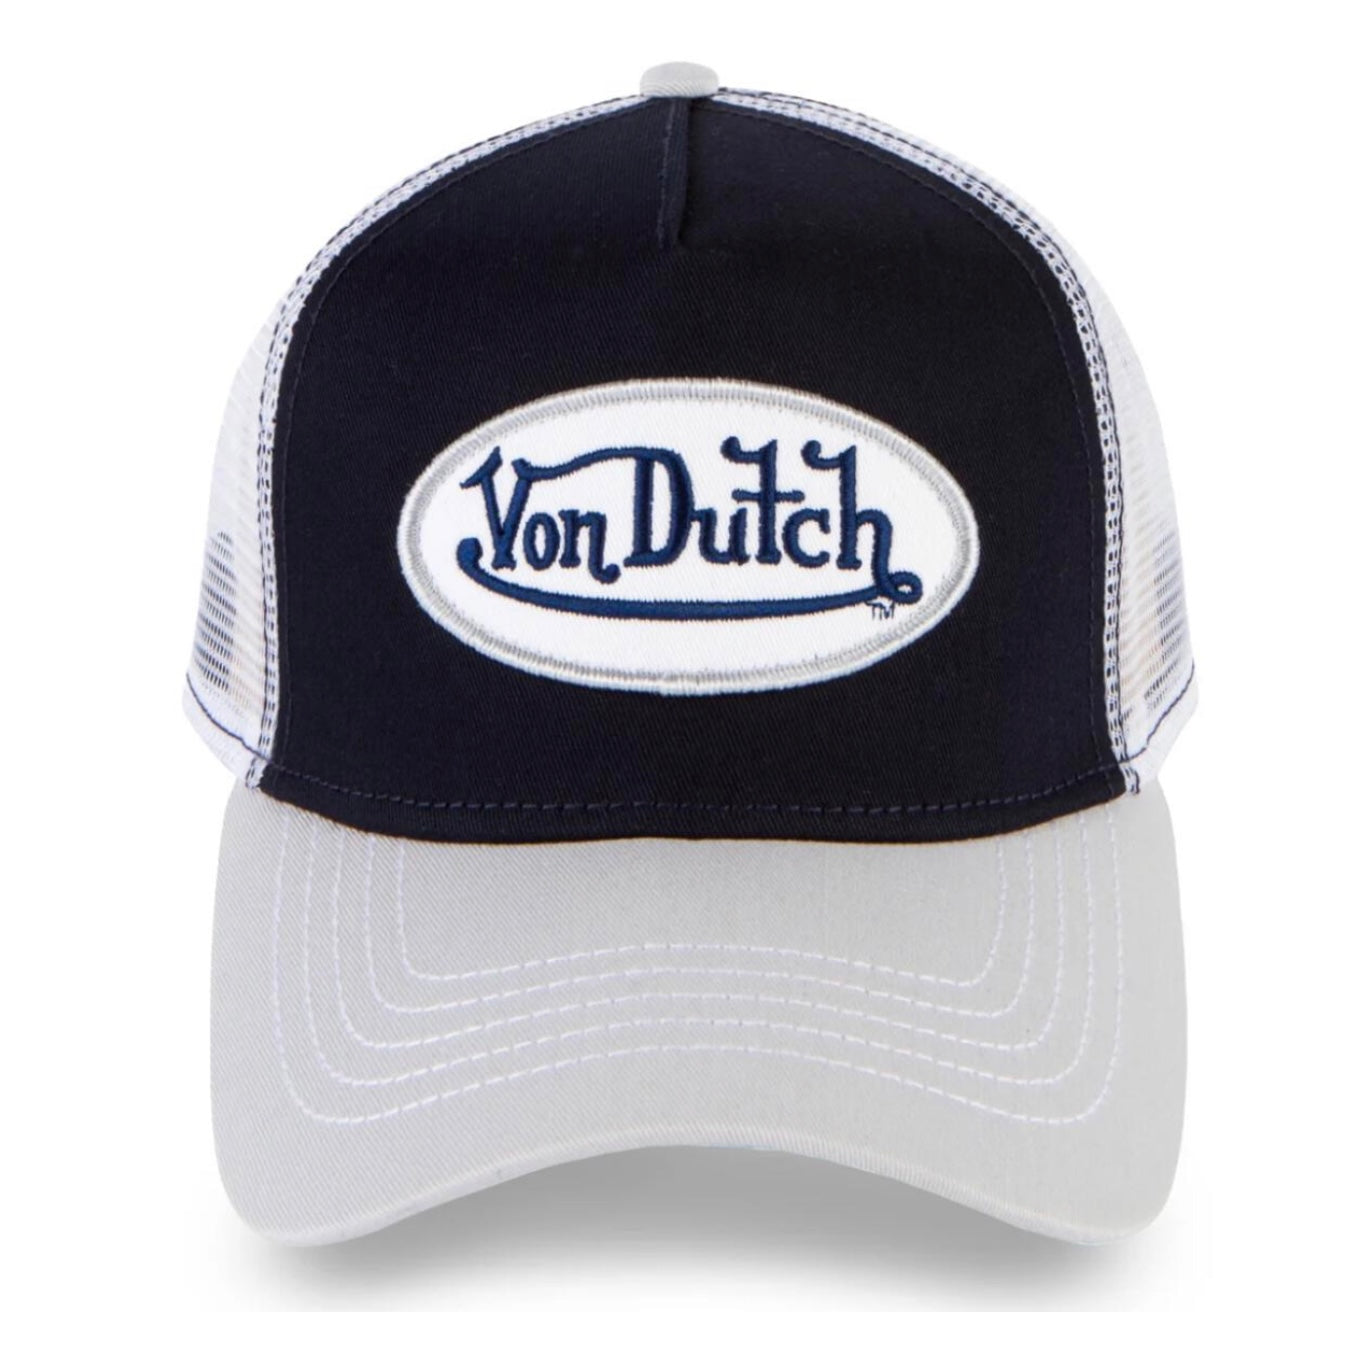 Von Dutch Logo Trucker Hat